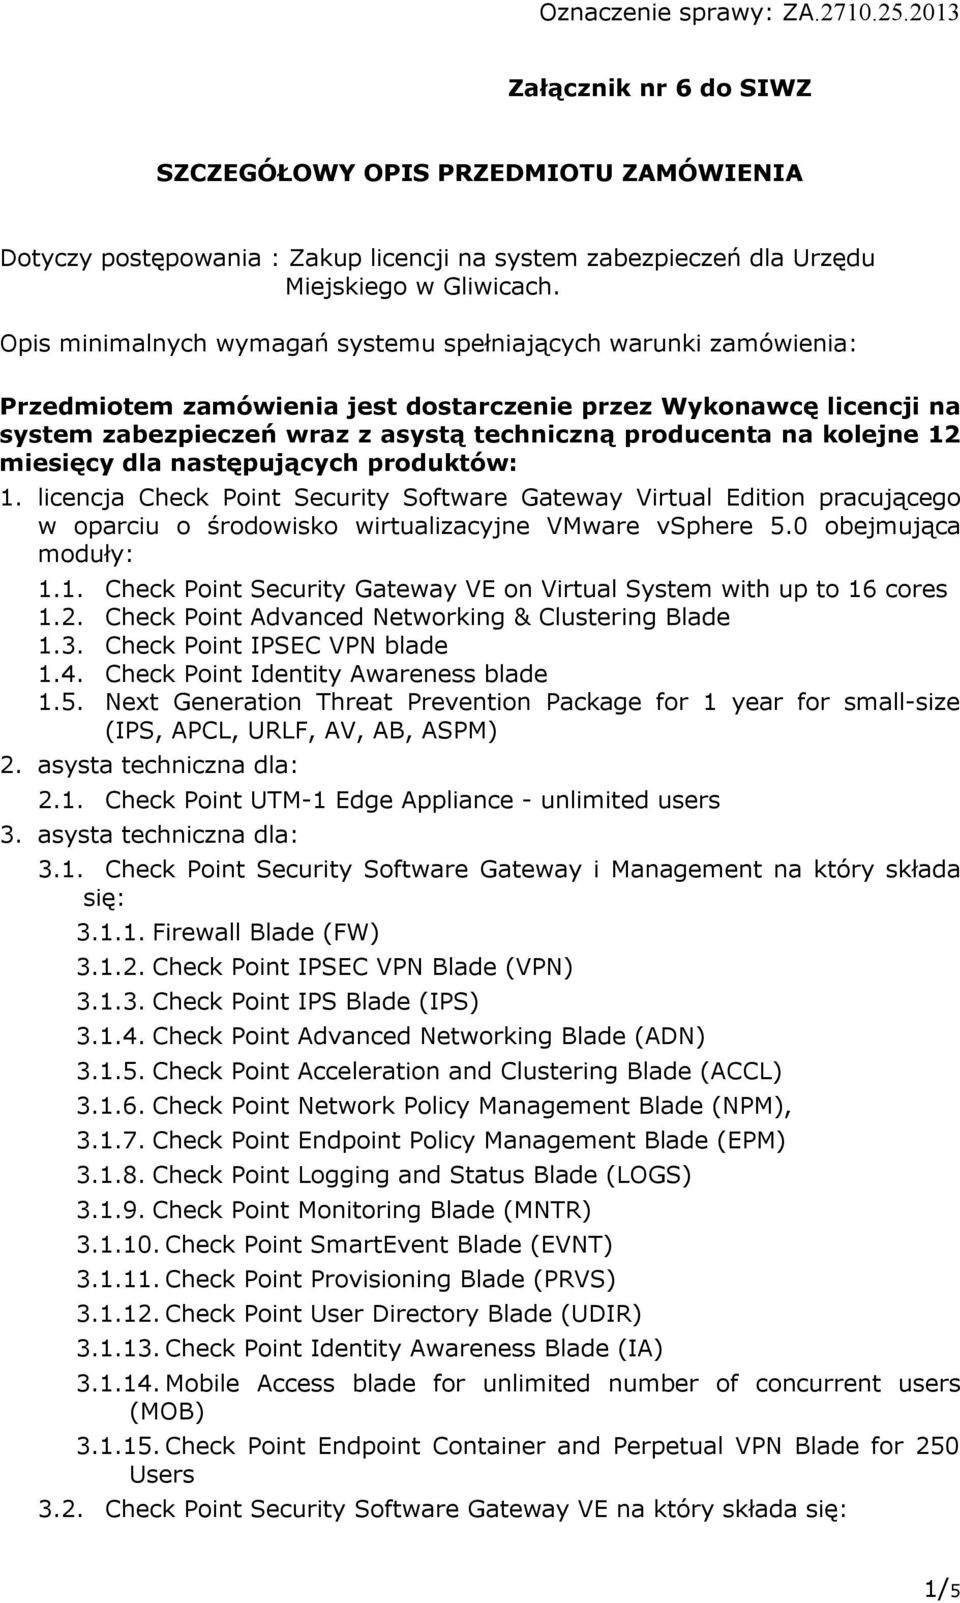 kolejne 12 miesięcy dla następujących produktów: 1. licencja Check Point Security Software Gateway Virtual Edition pracującego w oparciu o środowisko wirtualizacyjne VMware vsphere 5.